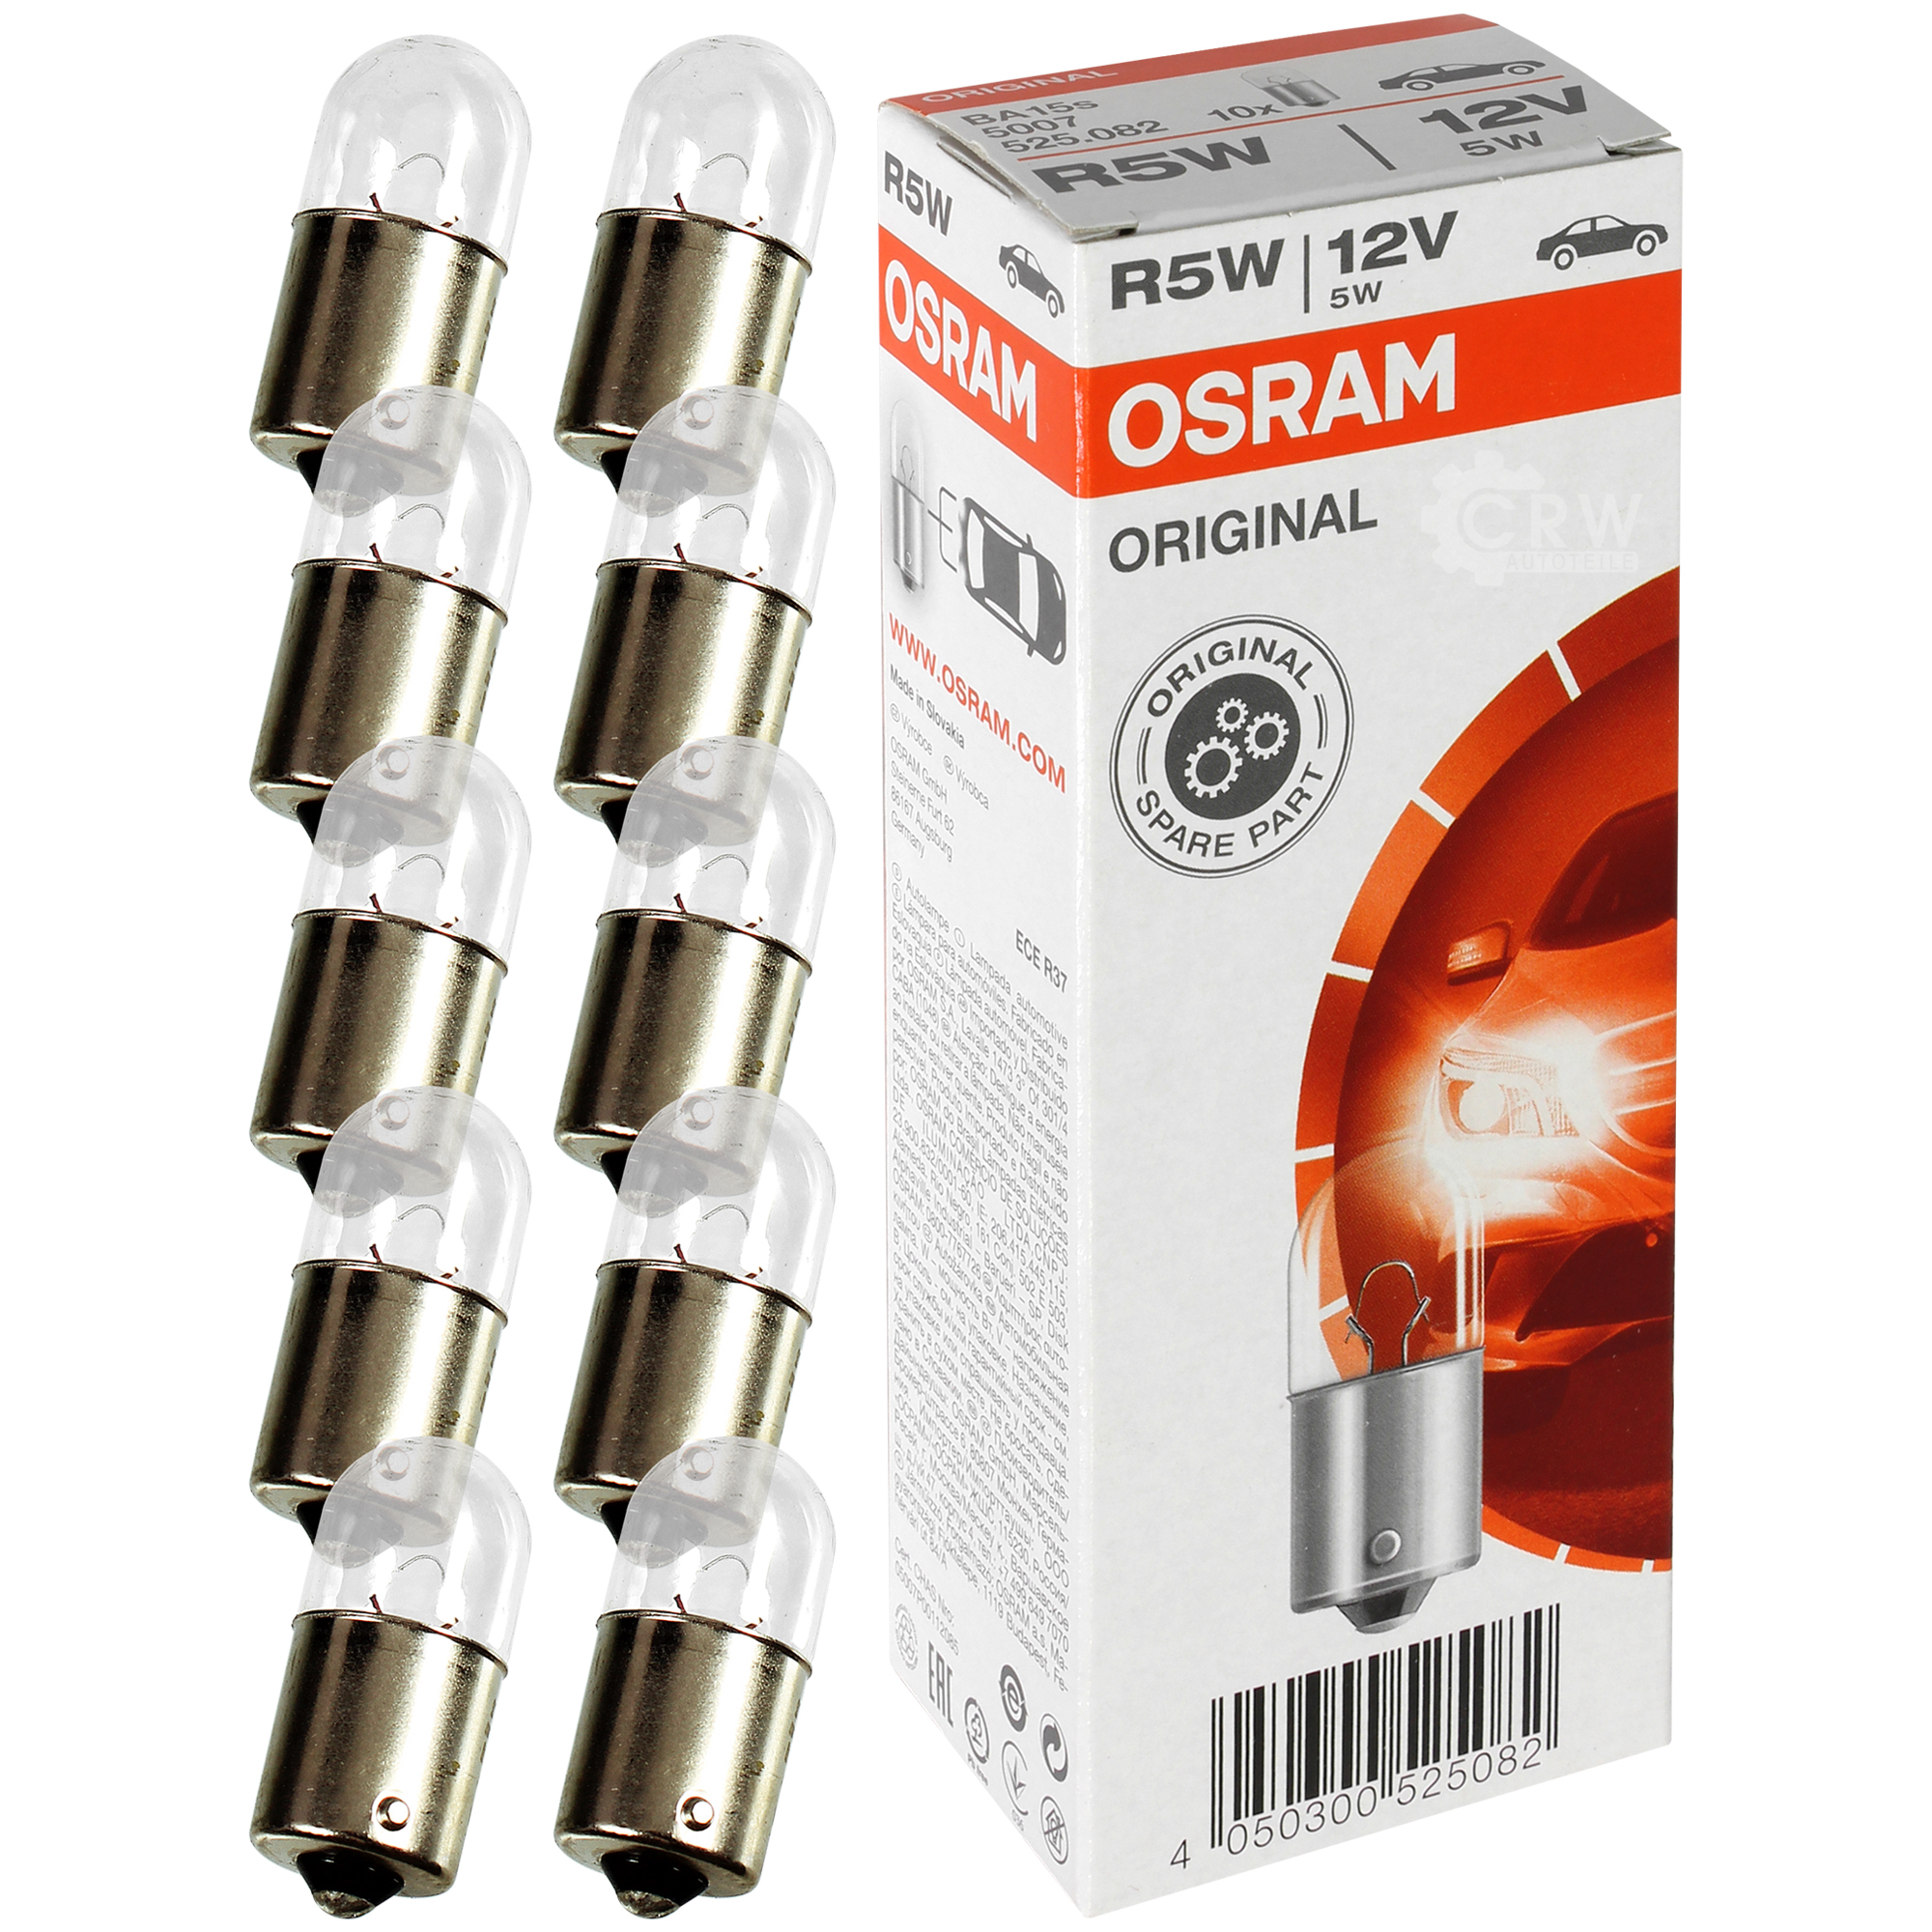 OSRAM Line Spare Parts R5W 12V 5W Sockel BA15s 10 Stück